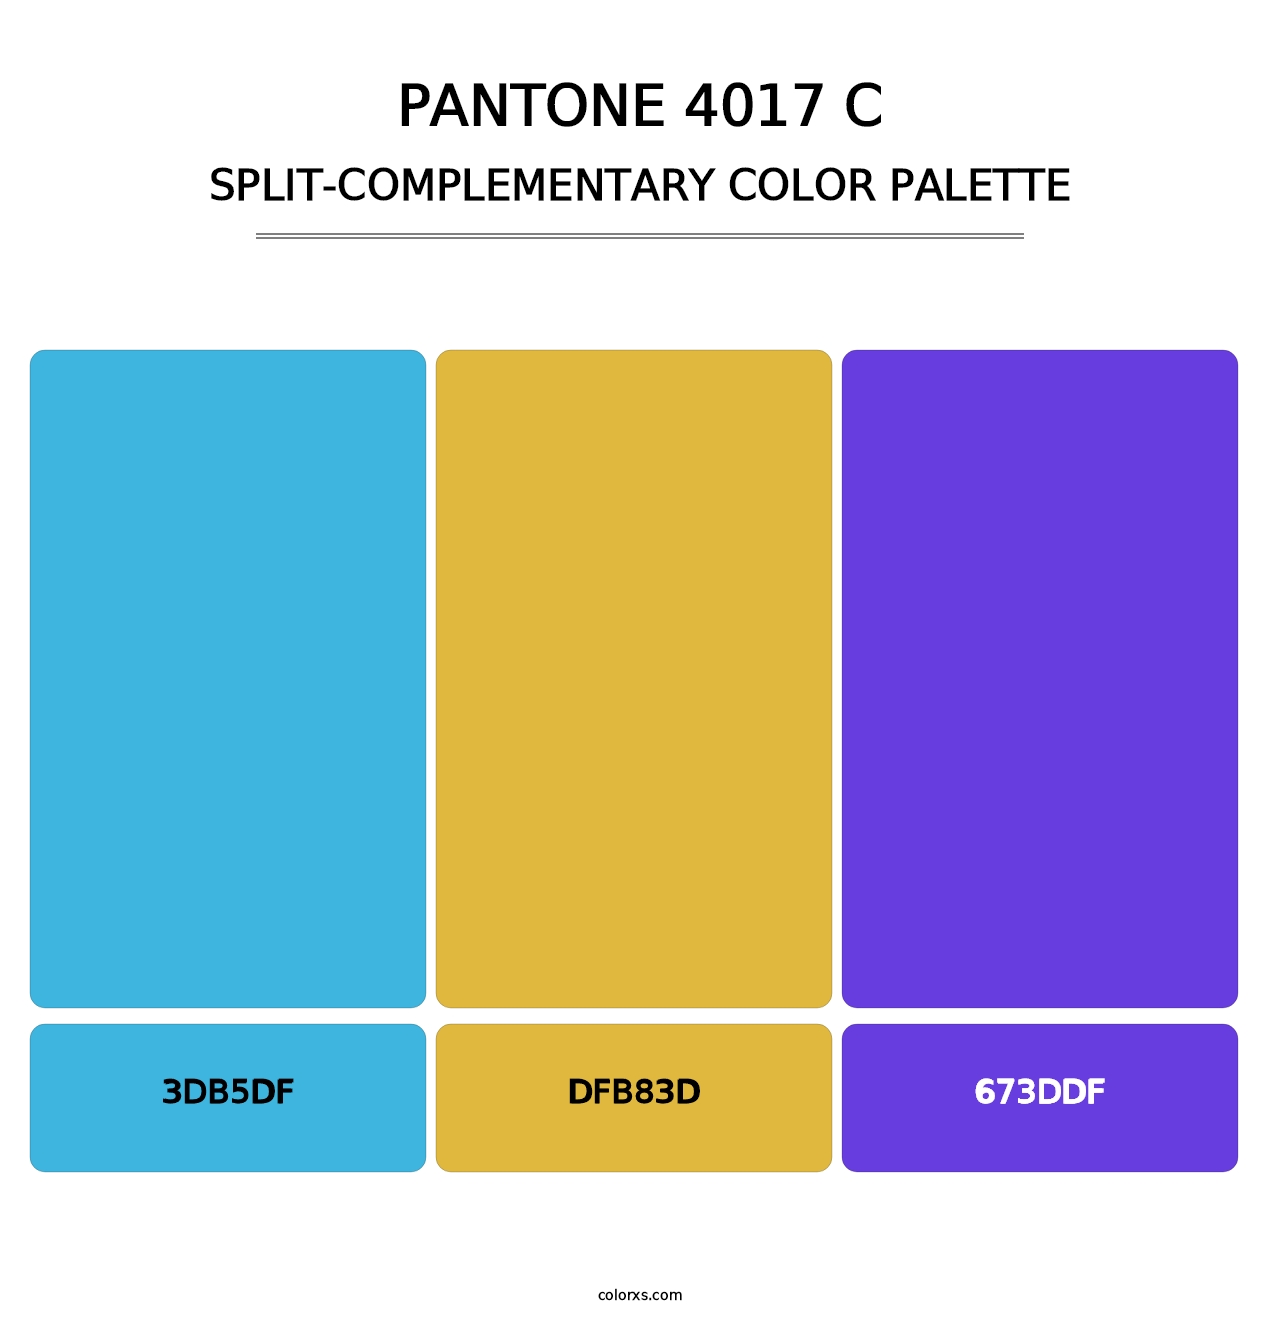 PANTONE 4017 C - Split-Complementary Color Palette